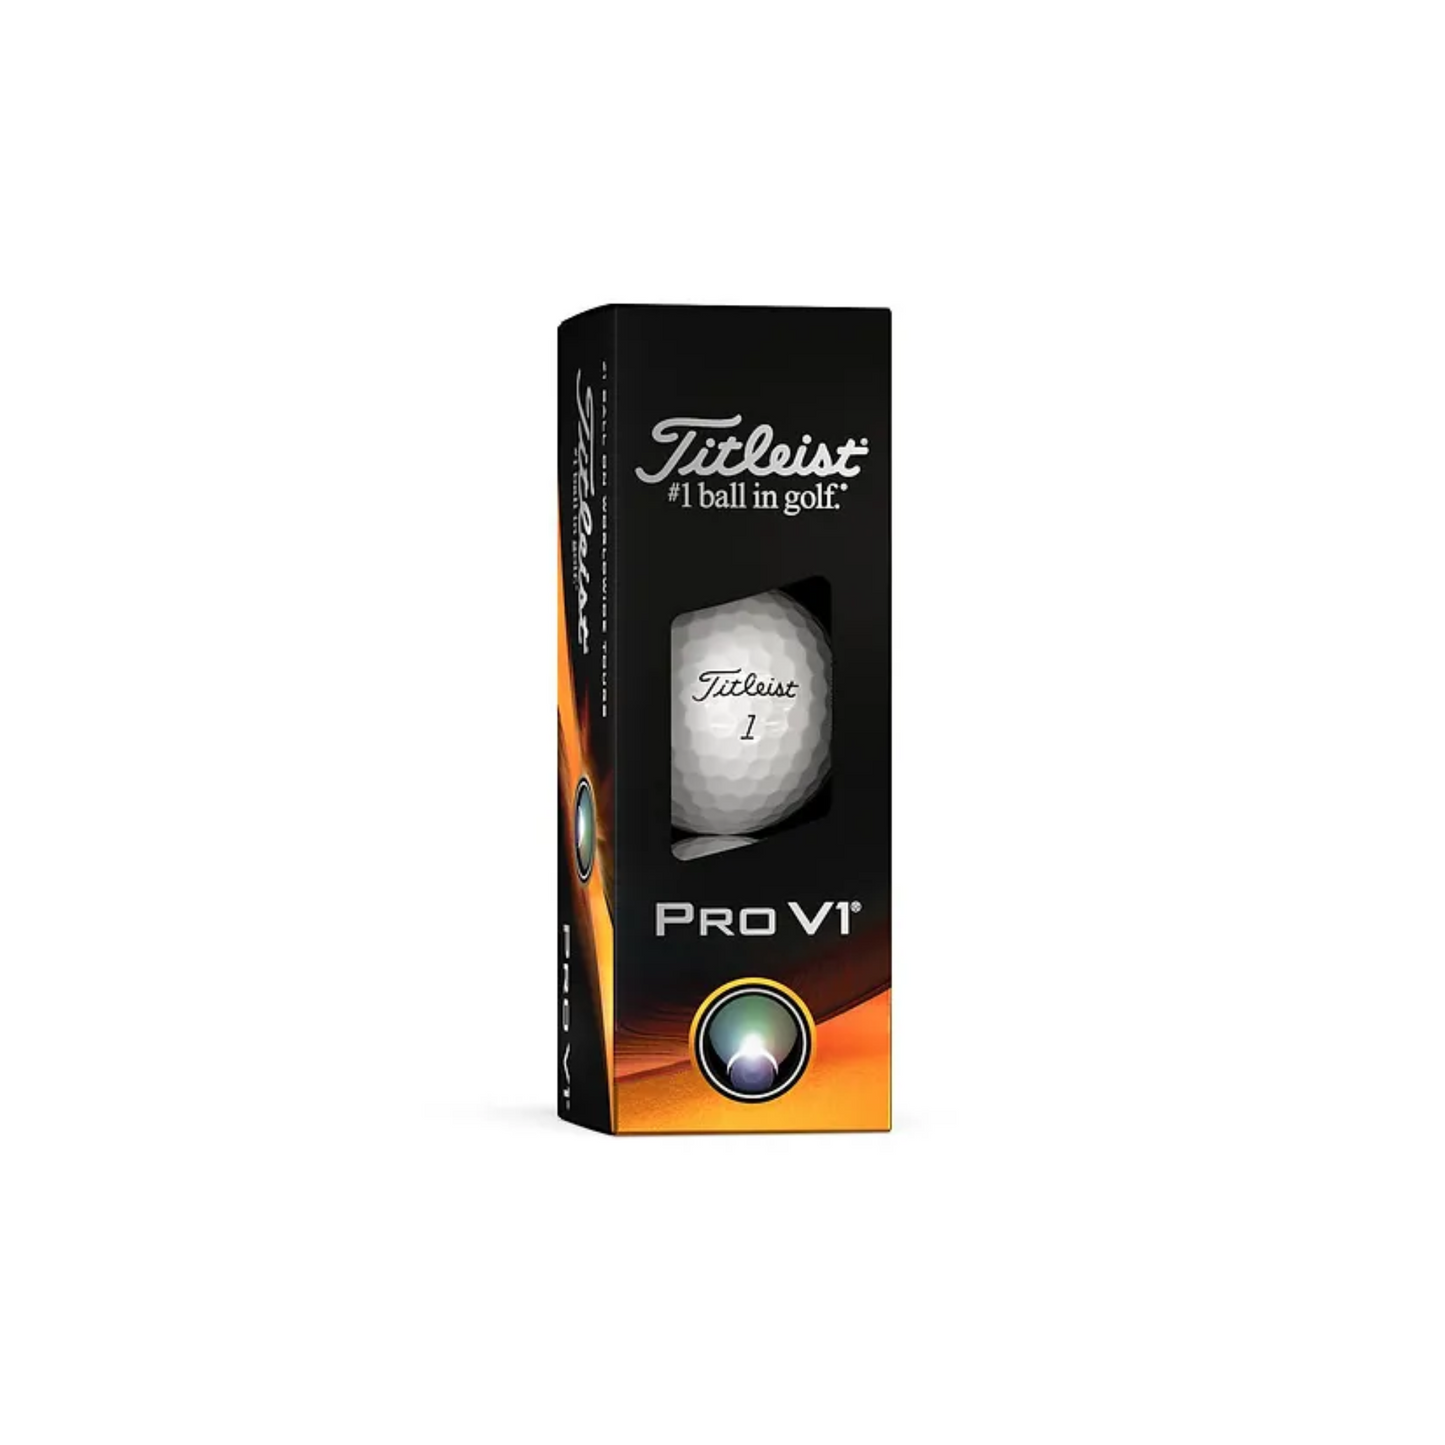 Titleist® Pro V1® Golf Ball